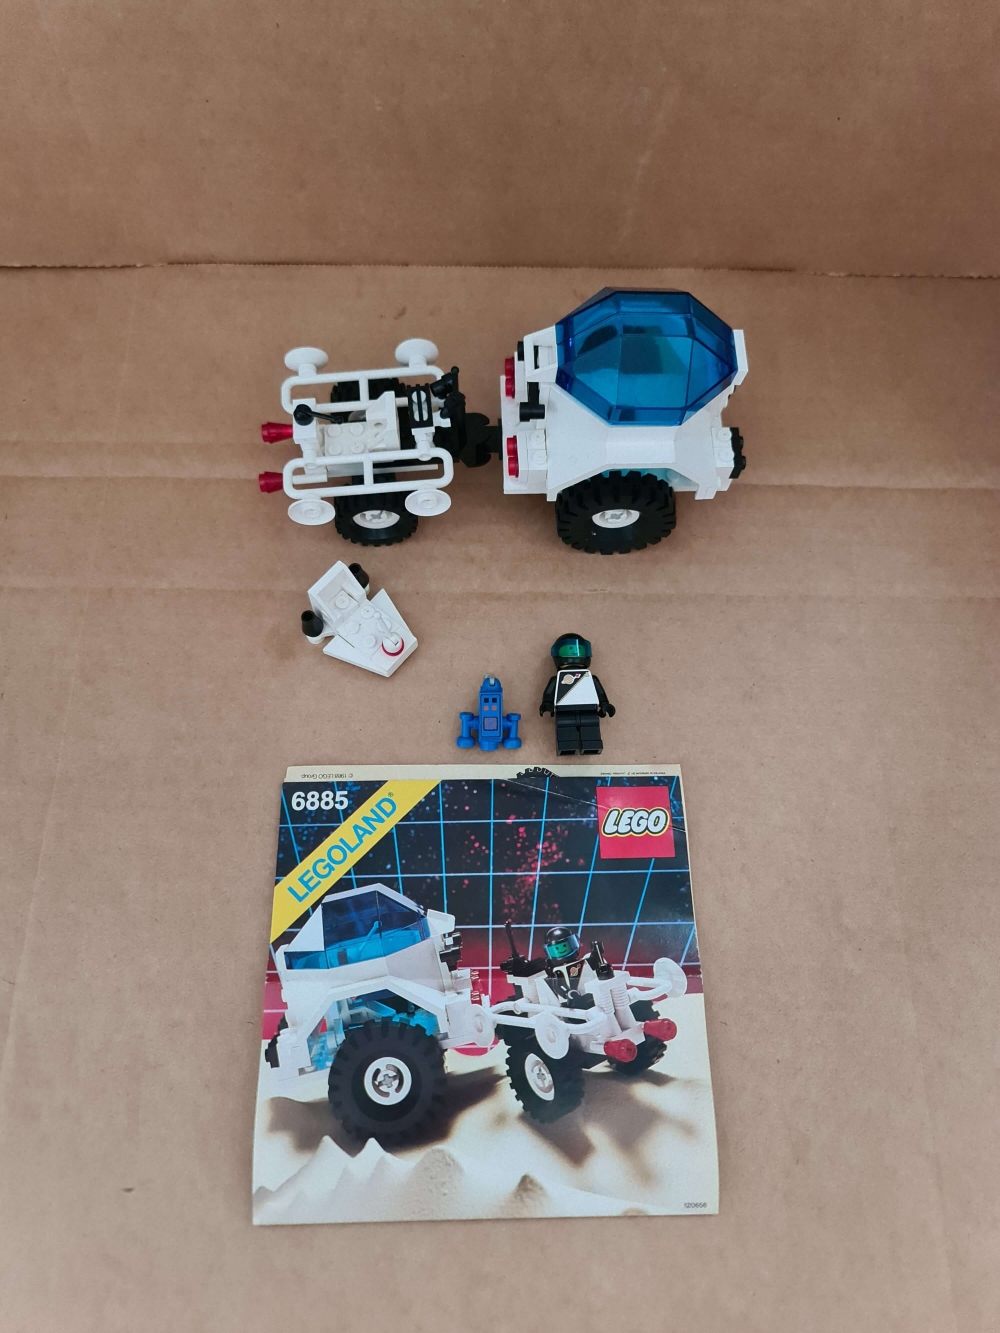 Sett 6885 fra Lego Space : Futuron serien.
Meget pent.
Komplett med manual.